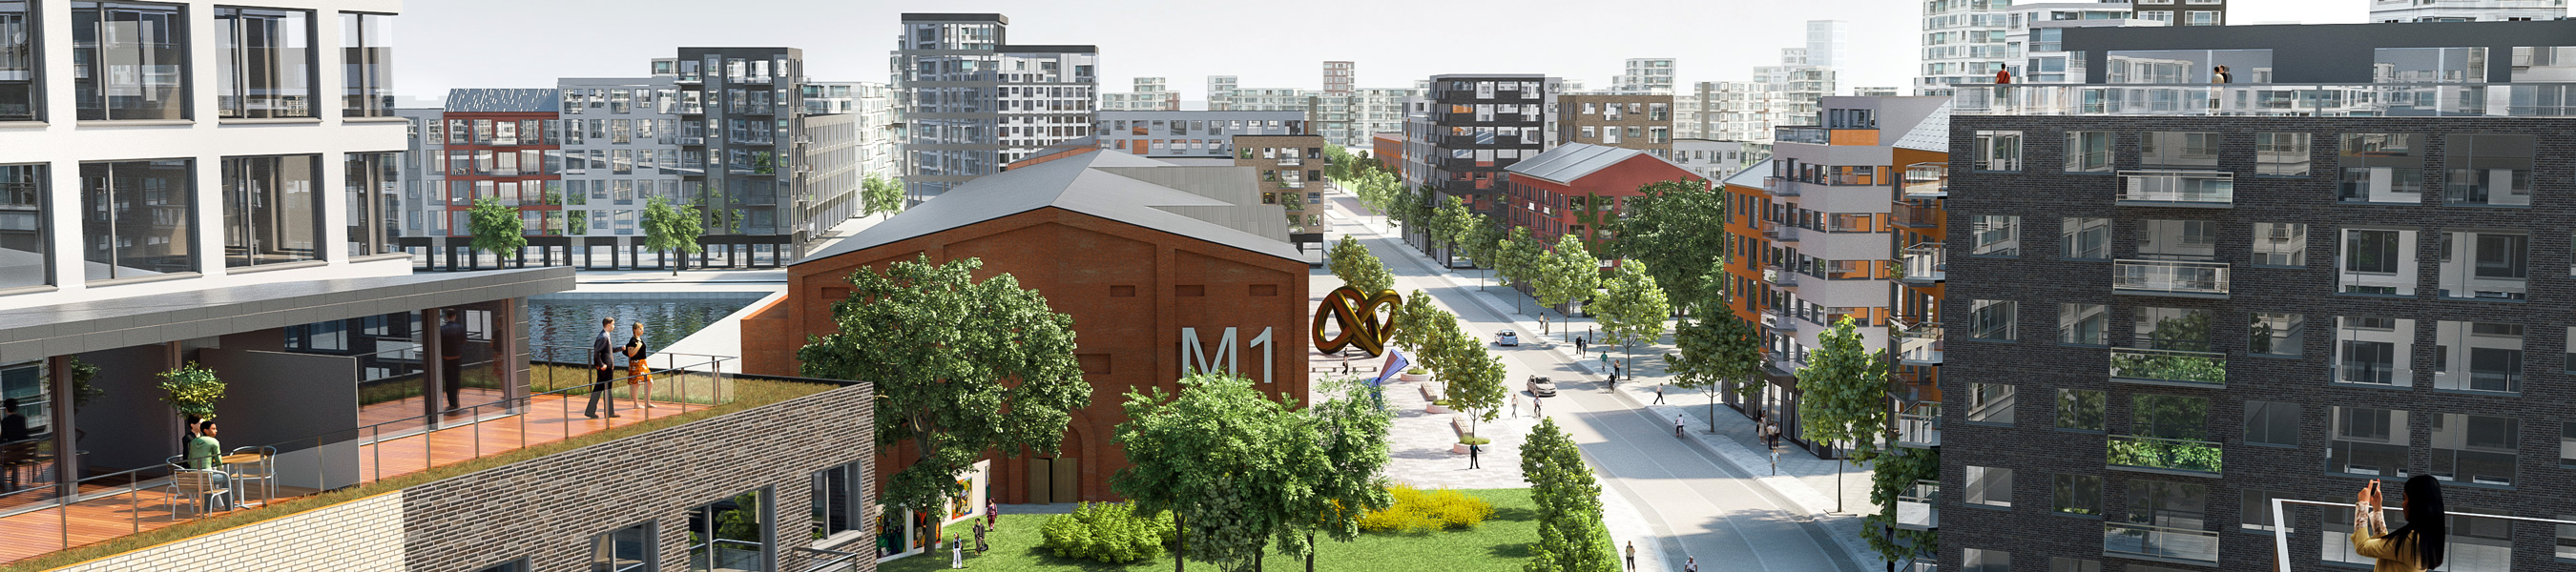 Visionsillustration som visar den stora tegelbyggnaden Magasin M1 i det färdigbyggda området i Nyhamnen. 